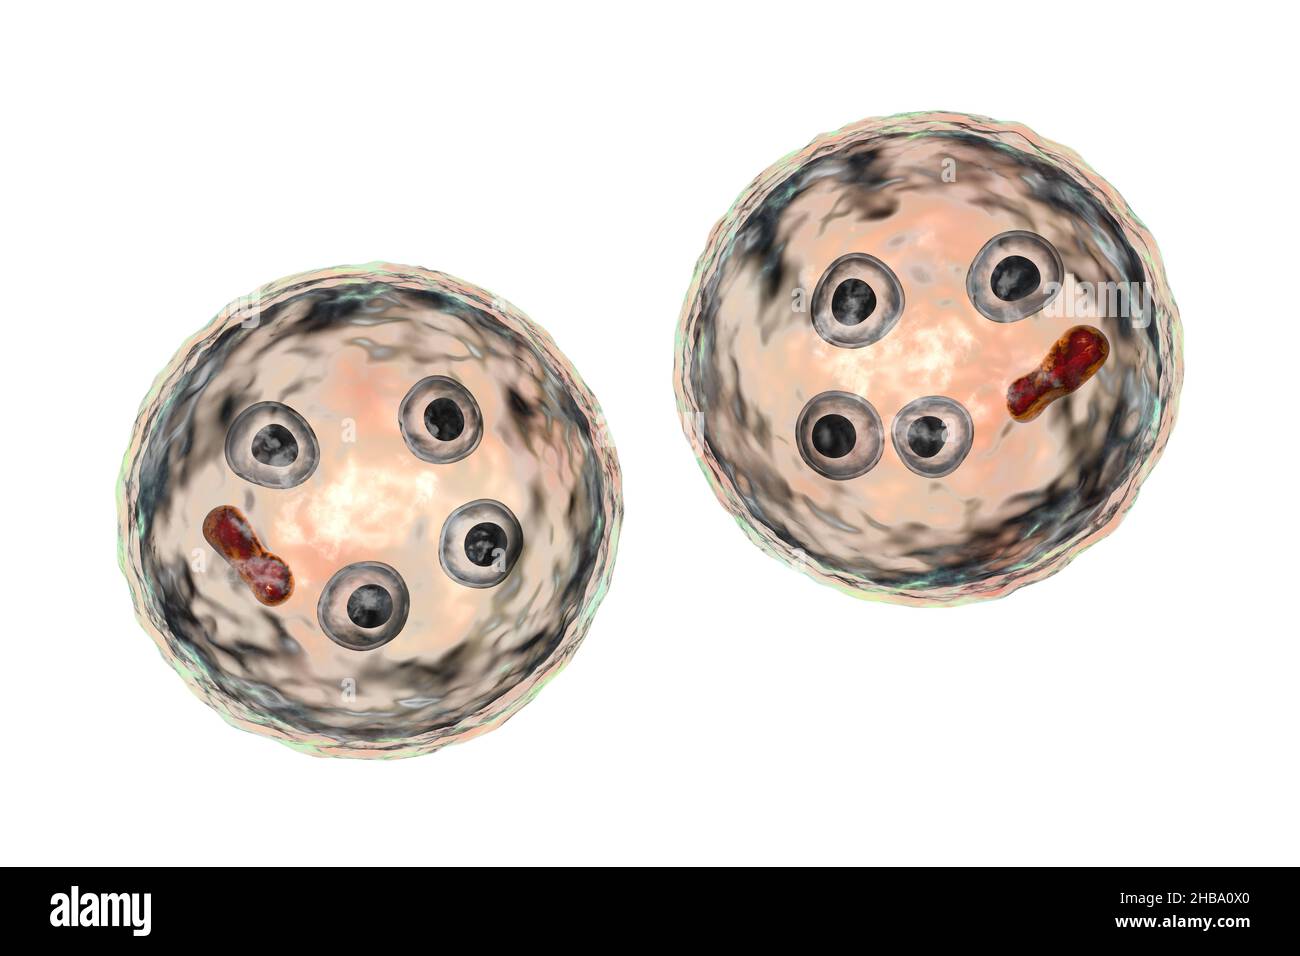 Zysten von Entamoeba histolytica protozoan, Computer-Illustration. Entamoeba histolytica ist ein anaerobes parasitäres Protozoan, das bei Menschen nach der Einnahme von infektiöser Zyste in kontaminierten Lebensmitteln oder Wasser eine amöbische Dysenterie verursacht. Die reife Zyste von E. histolytica ist 10-20 Mikrometer groß, hat vier Kerne und einen gerundeten länglichen chromatoidalen Balken (dunkelrot). Stockfoto